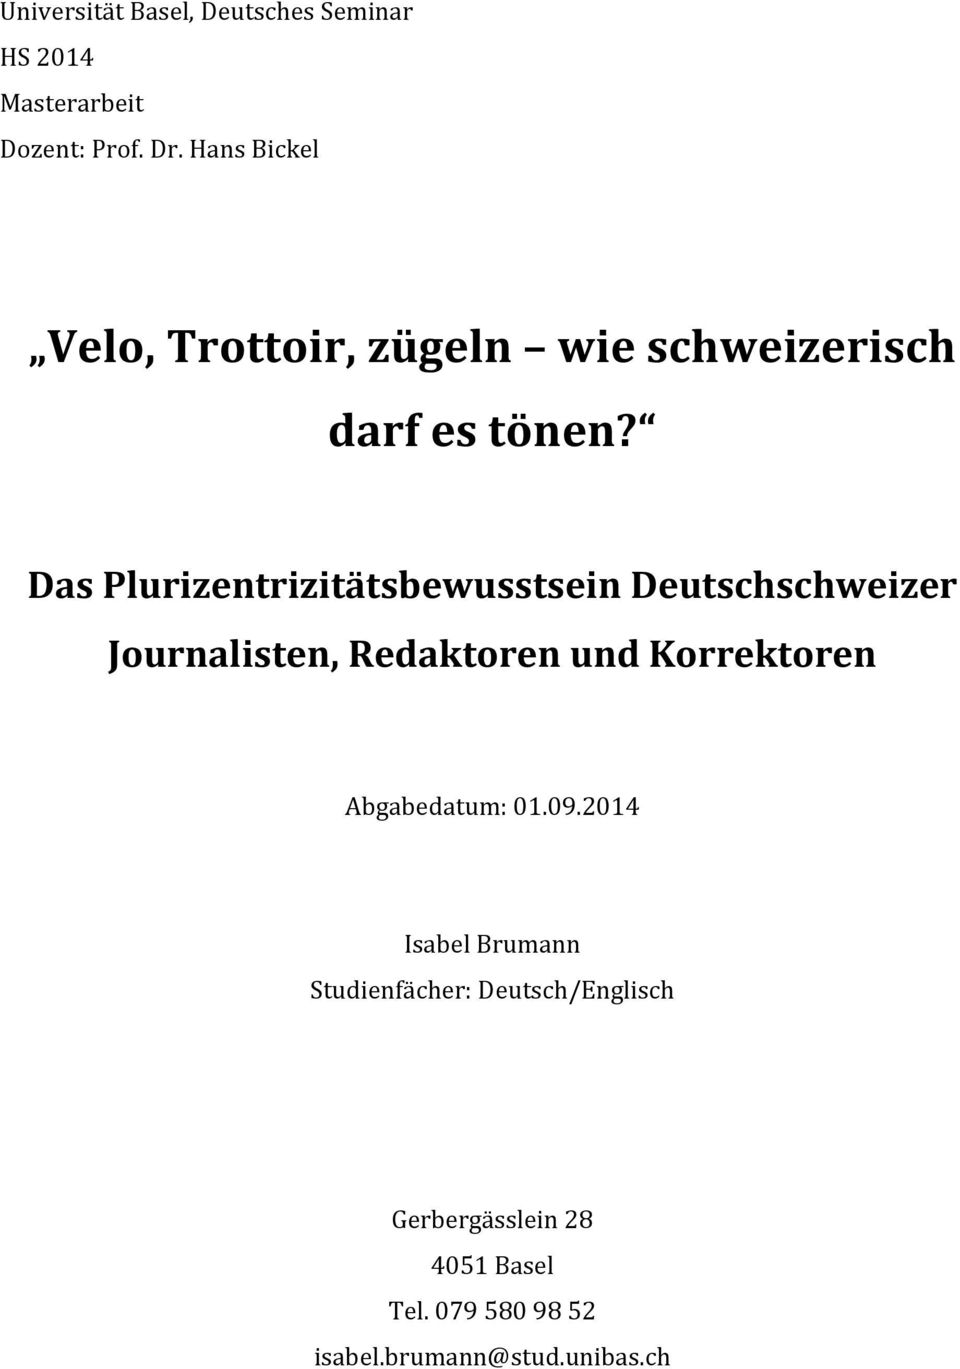 Das Plurizentrizitätsbewusstsein Deutschschweizer Journalisten, Redaktoren und Korrektoren